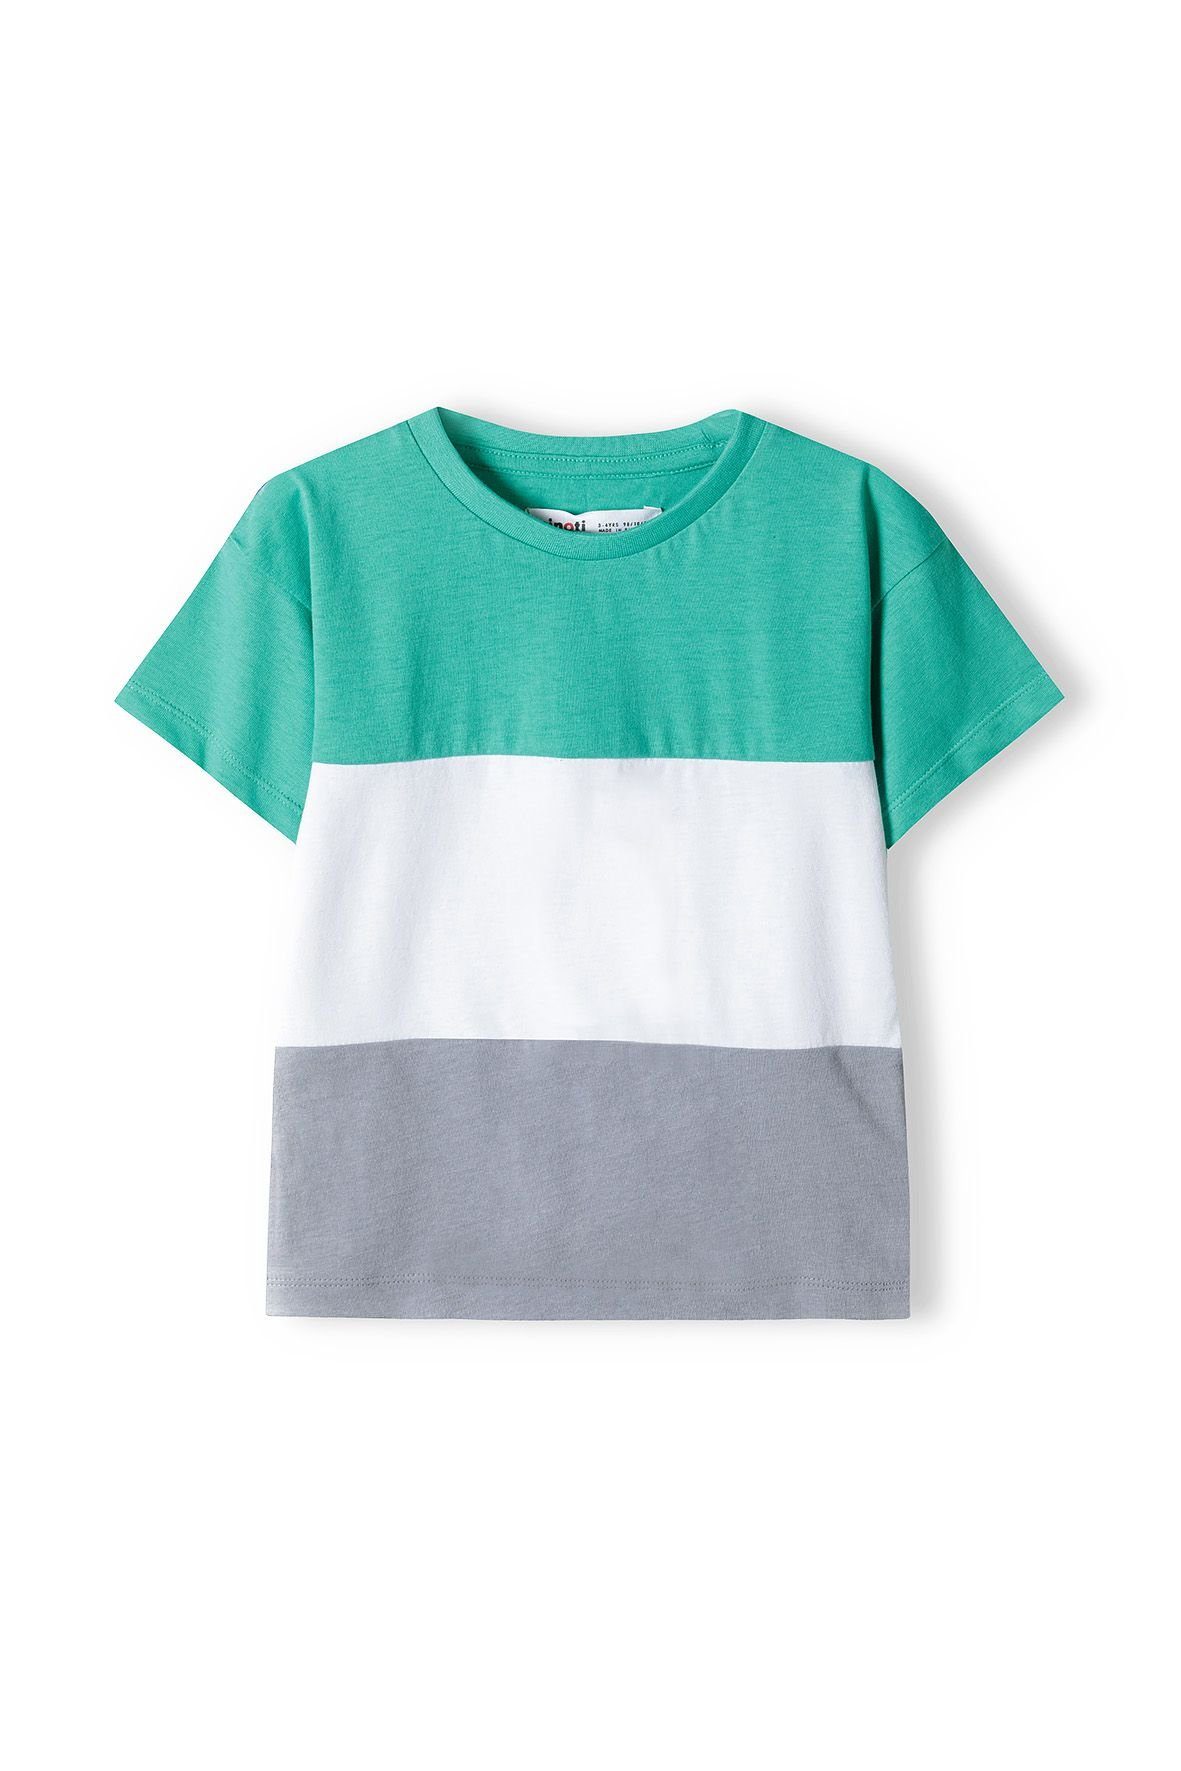 Sweatbermudas und Grün T-Shirt MINOTI Set Shorts & (12m-8y) T-Shirt